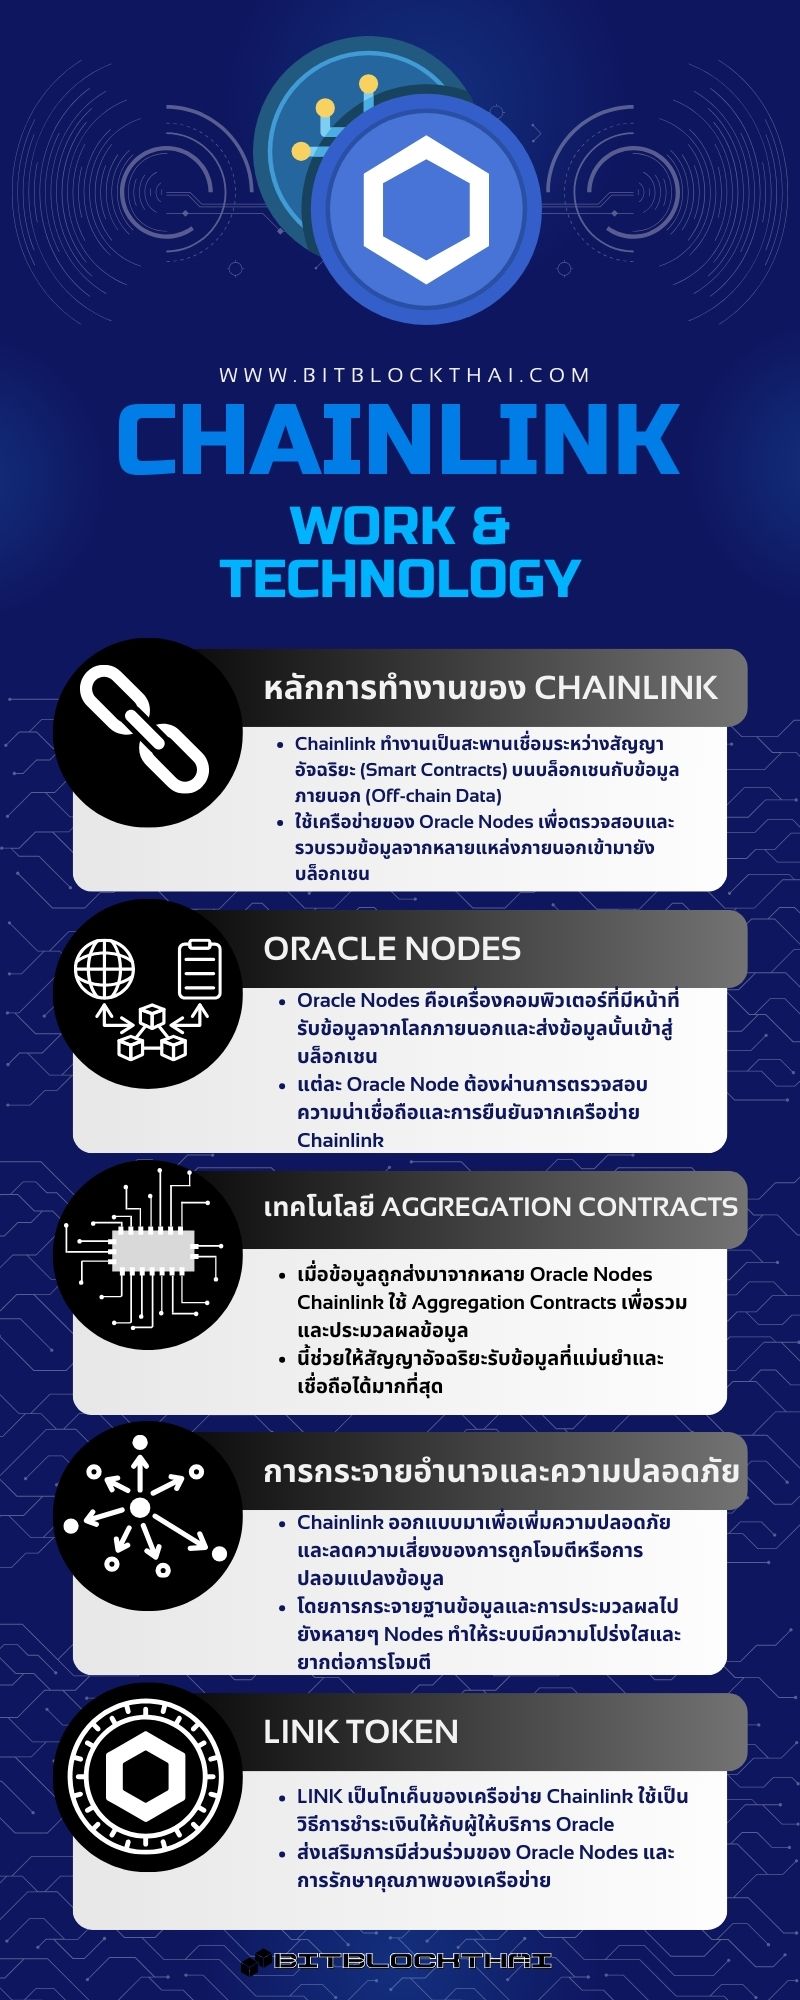 หลักการทำงานและเทคโนโลยีของ Chainlink(LINK)